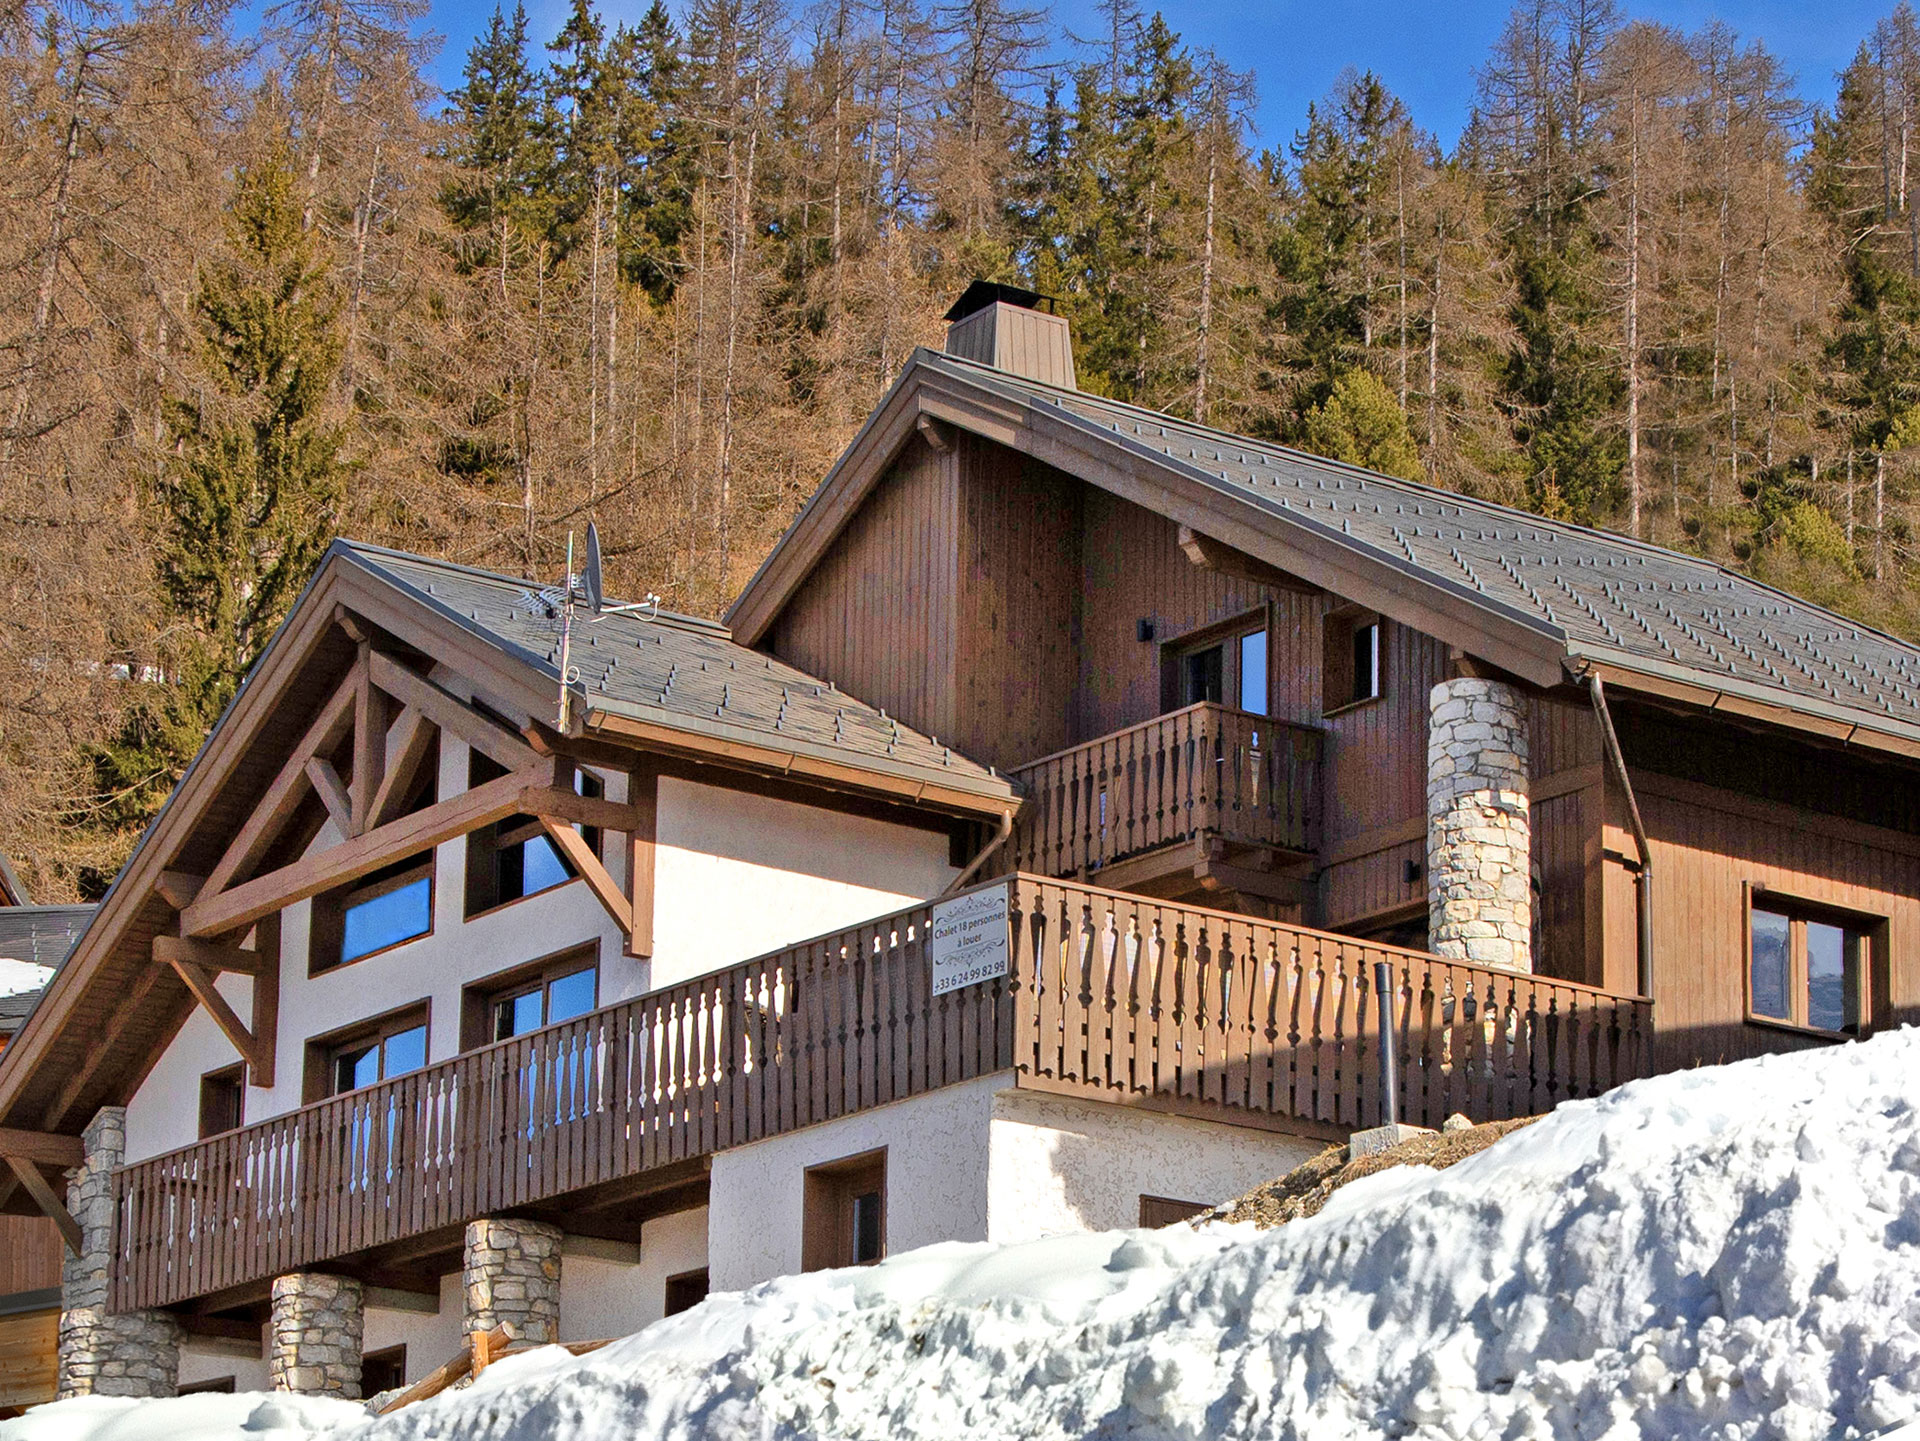 foto verbessern helles ferienhaus mit viel schnee und blauem himmel nachher